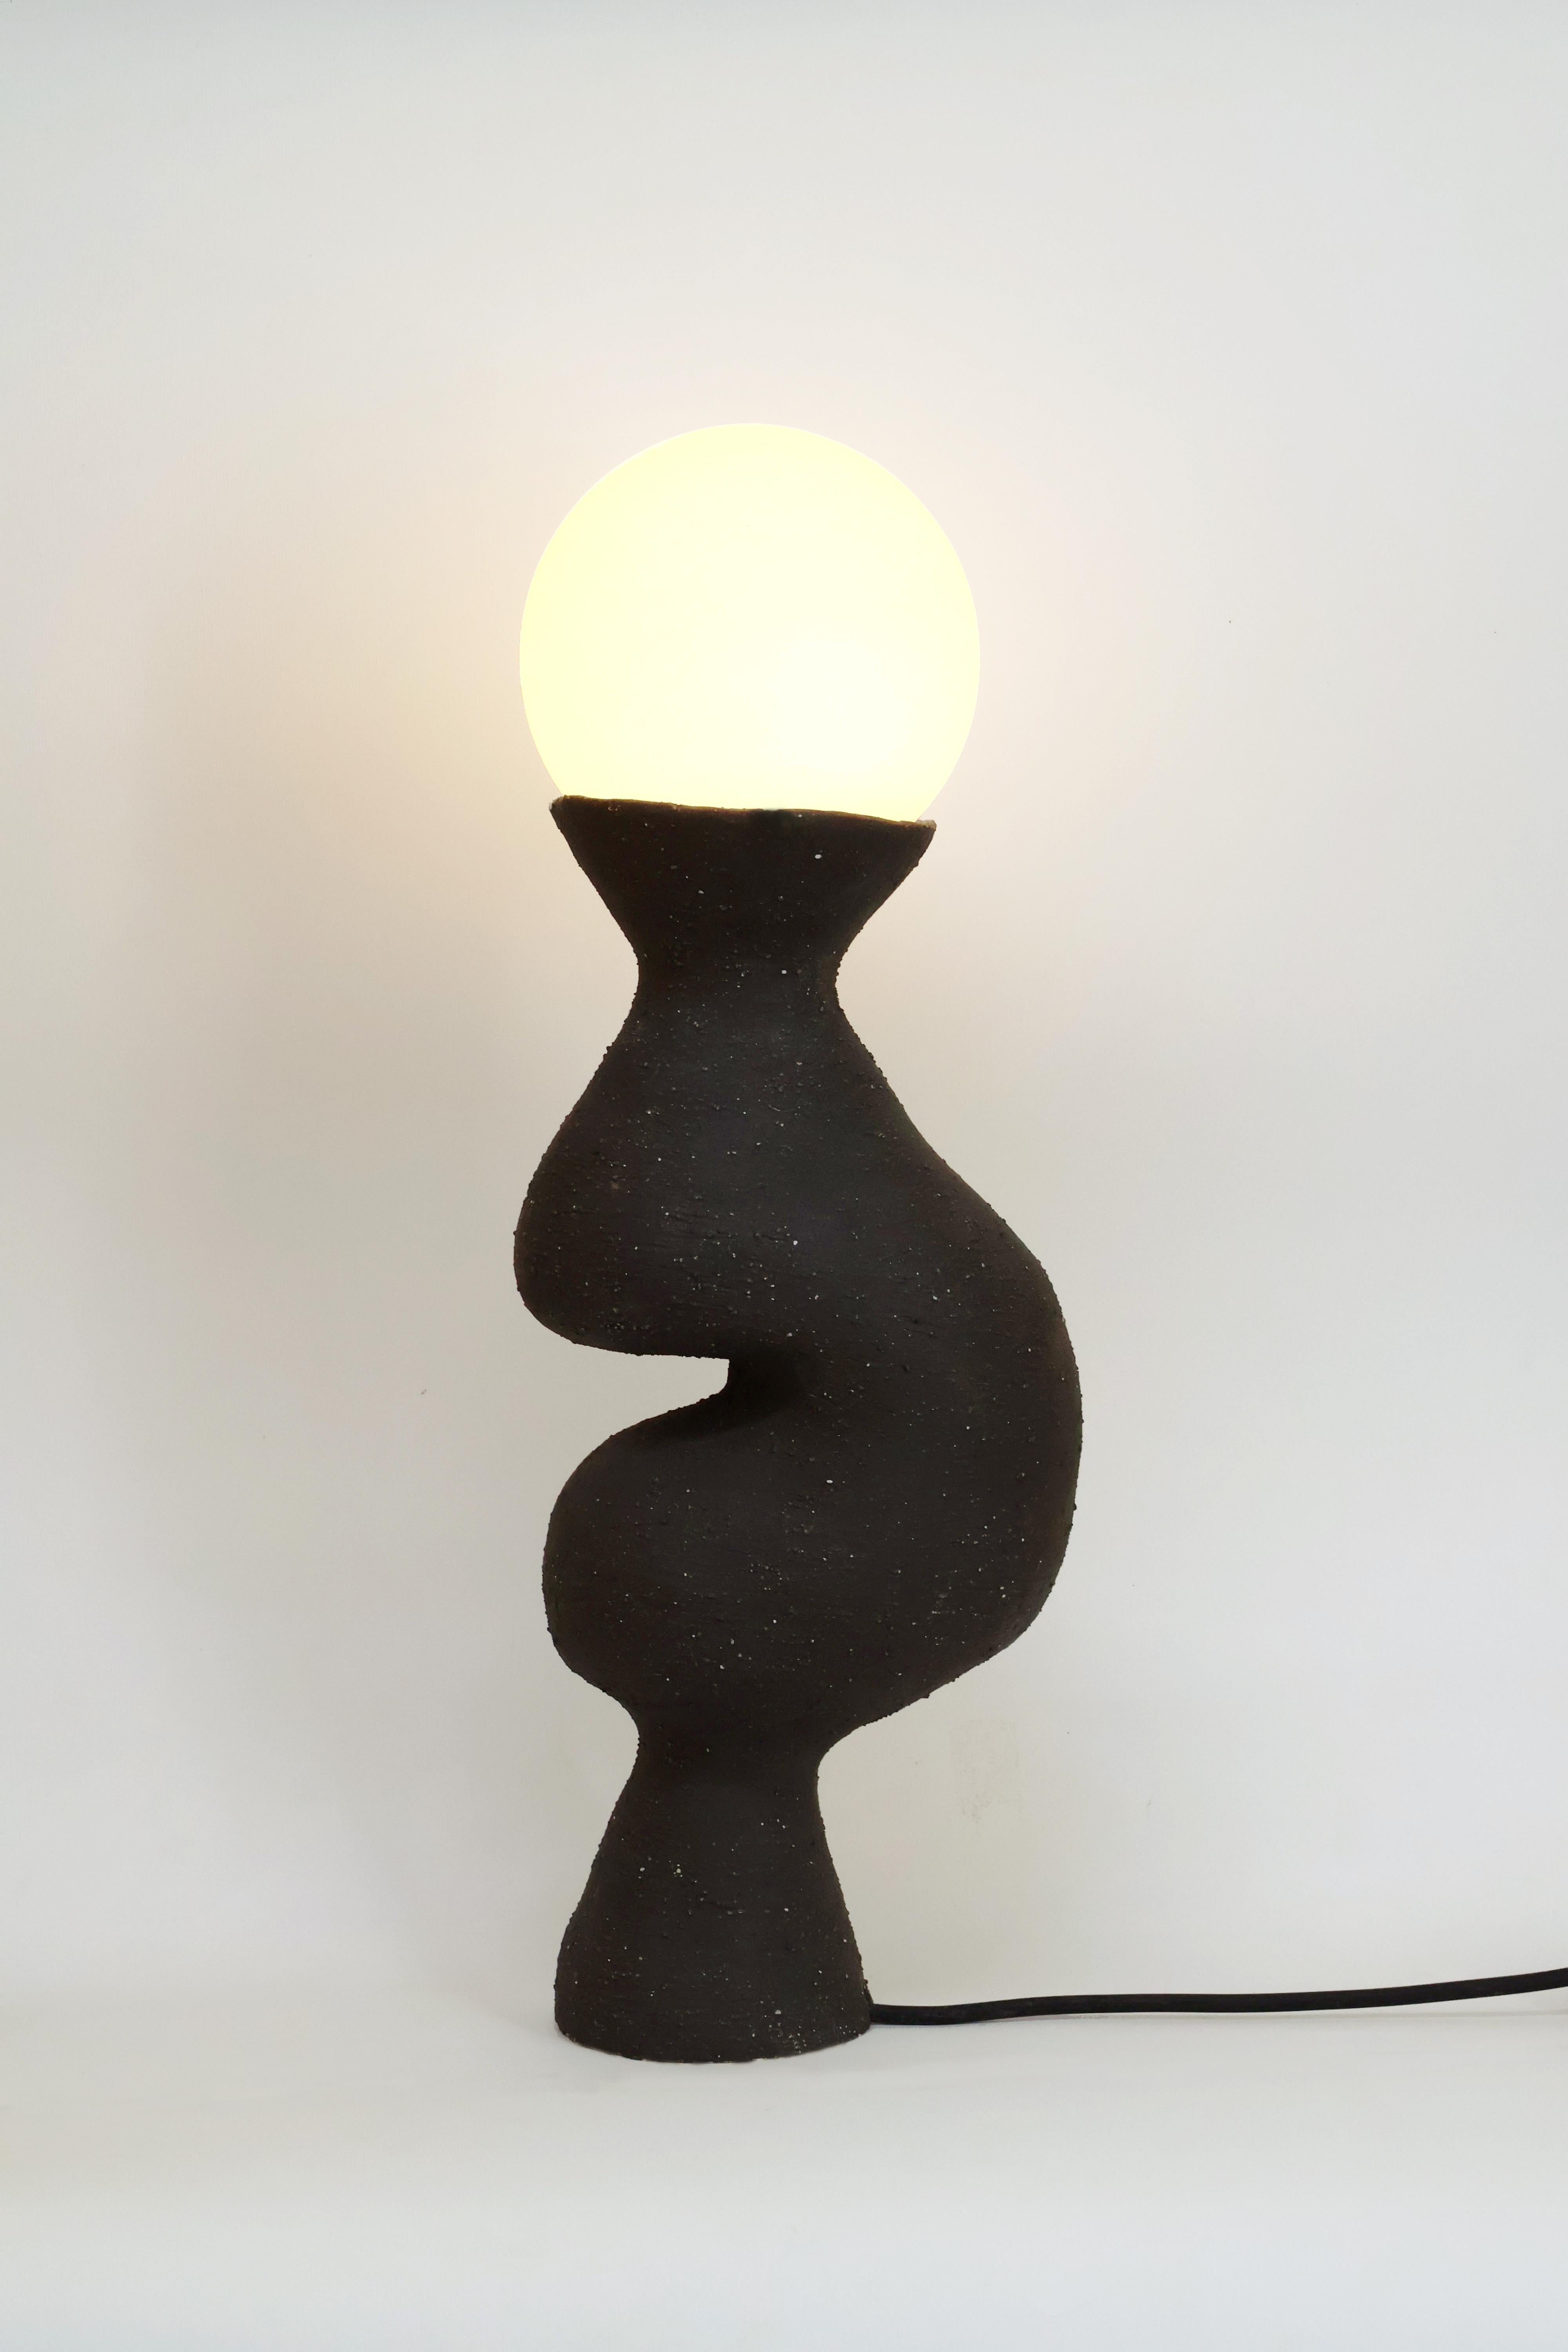 Lampe de table Silueta II de Camila Apaez
Unique en son genre
MATERIAL : Céramique, verre
Dimensions : L 14 x D 20 x H 53 cm

Ila Ceramica est née d'un processus de recherche intérieure où la céramique est devenue un espace de présence, de silence,